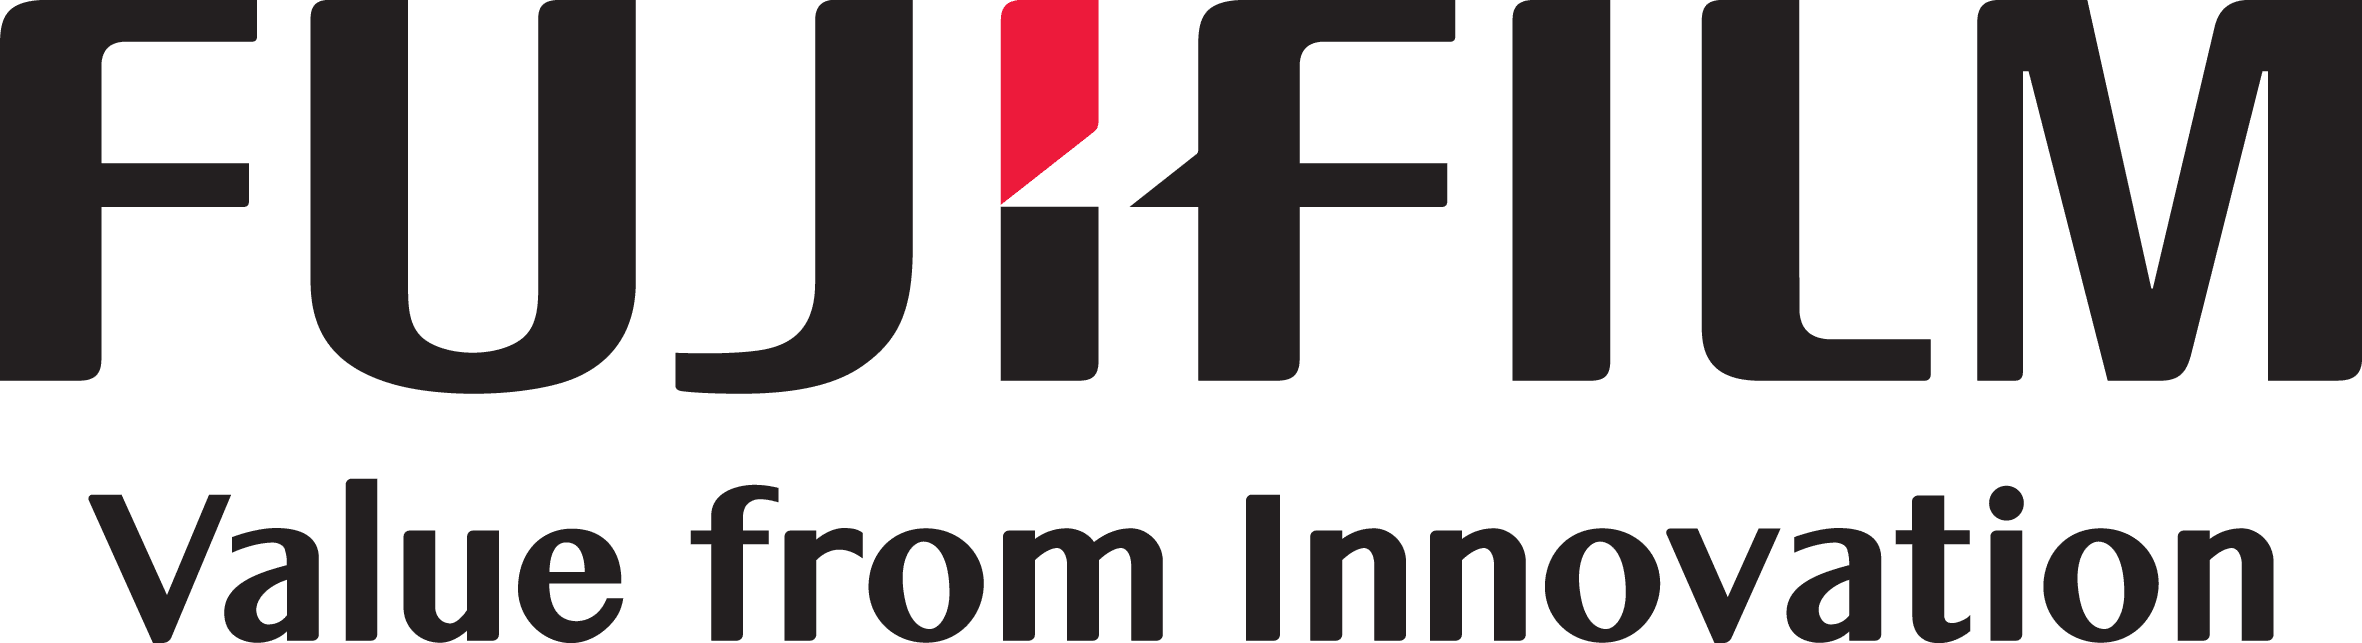 FUJIFILM Recording Media GmbH